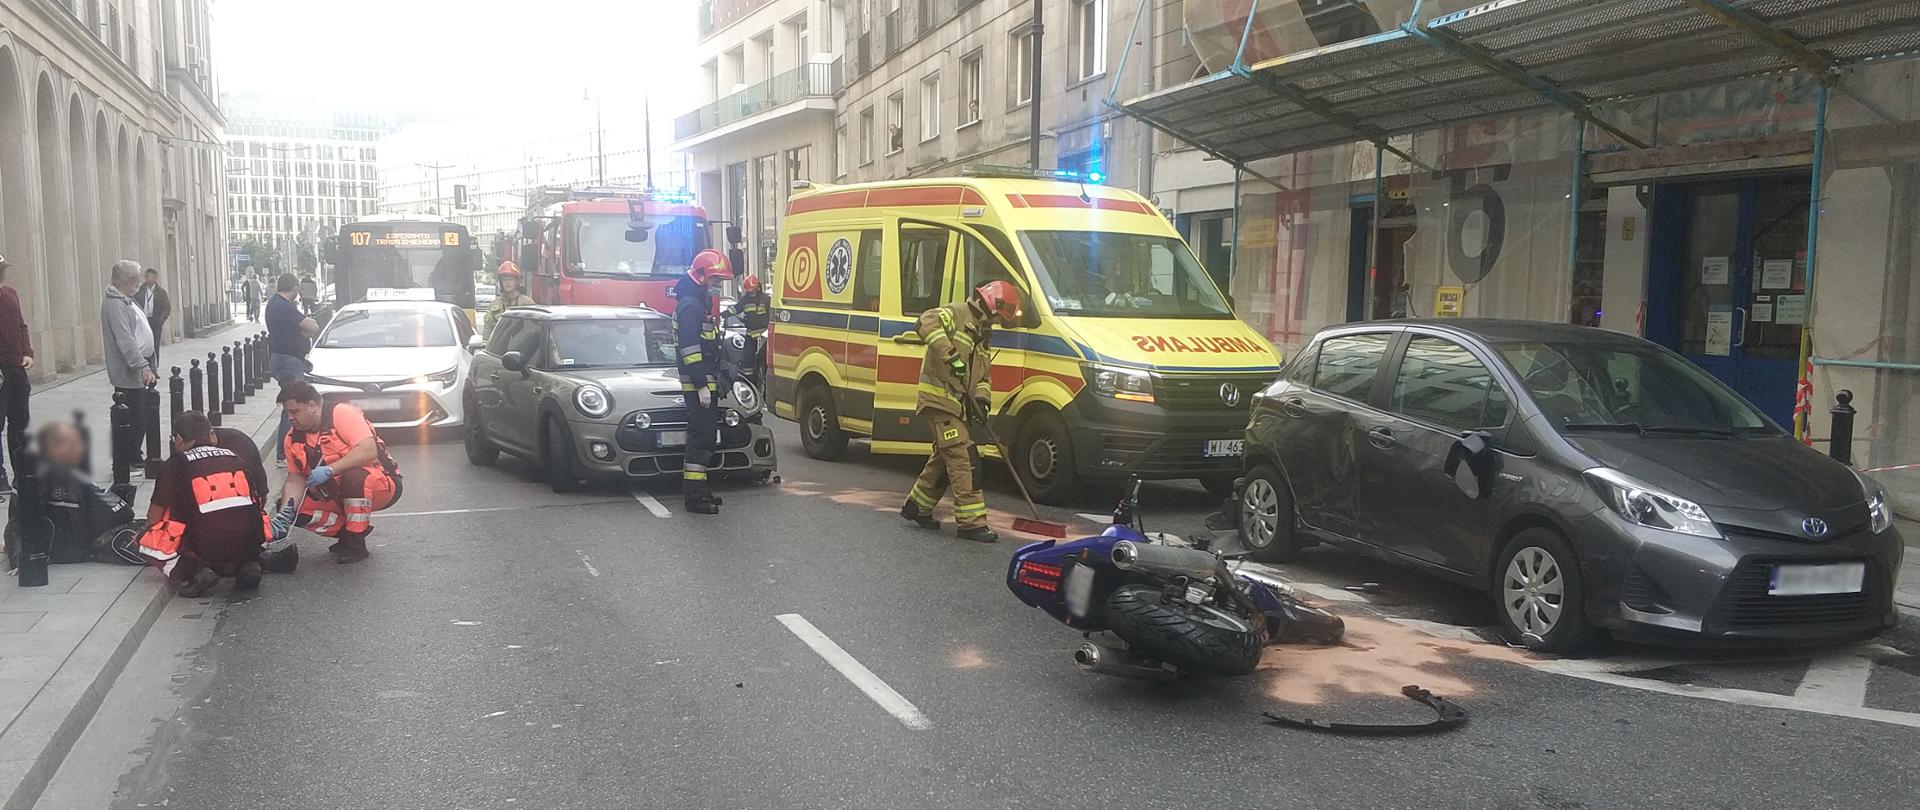 Na zdjęcie przedstawia sytuację zastaną przez strażaków po dojeździe na miejsce zdarzenia. Na zdjęciu z lewej strony na chodniku znajduje się poszkodowana osoba oraz ratownicy medyczni w pomarańczo-czarnych ubraniach którzy udzielają osobie pomocy medycznej. Po prawej stronie widać leżący niebieski motocykl oraz karetkę Pogotowia Ratunkowego z kolorze żółto-czerwono-niebieskim. Na zdjęciu widać tez strażaków w piaskowych oraz żółto-czarnych ubraniach ochronnych którzy zabezpieczają miejsce zdarzenia oraz zasypali sorbentem plamę oleju.